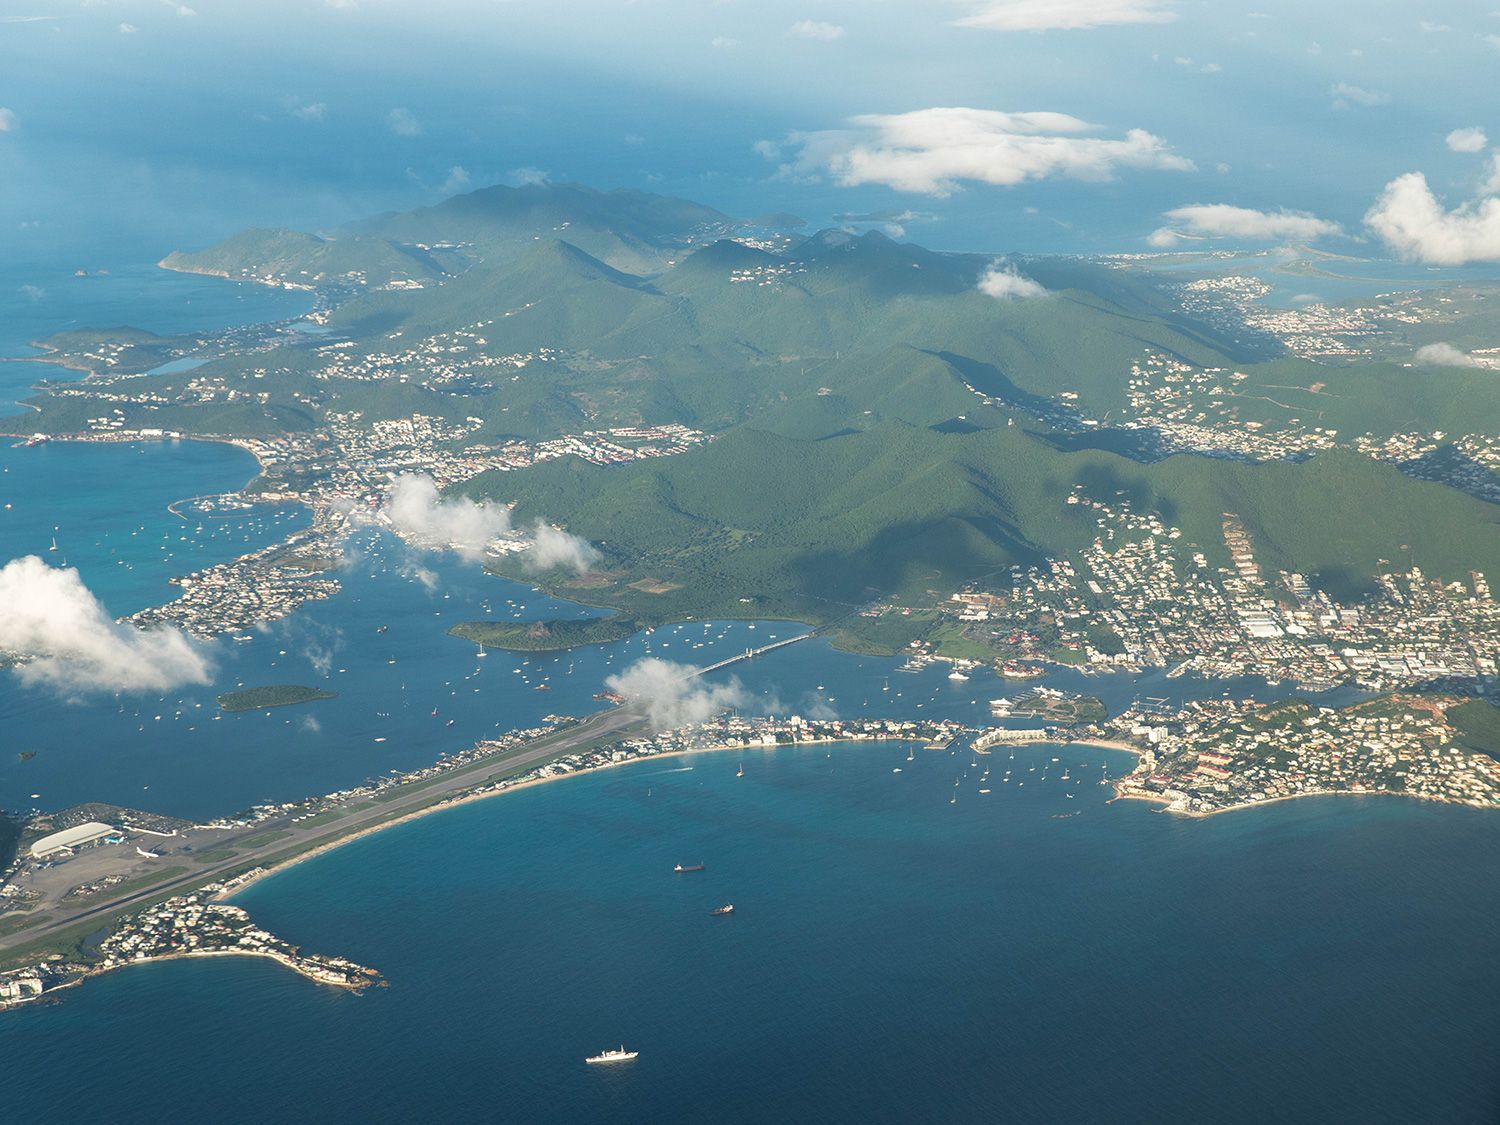 Las 5 cosas que hacen que St. Maarten sea tan espectacular